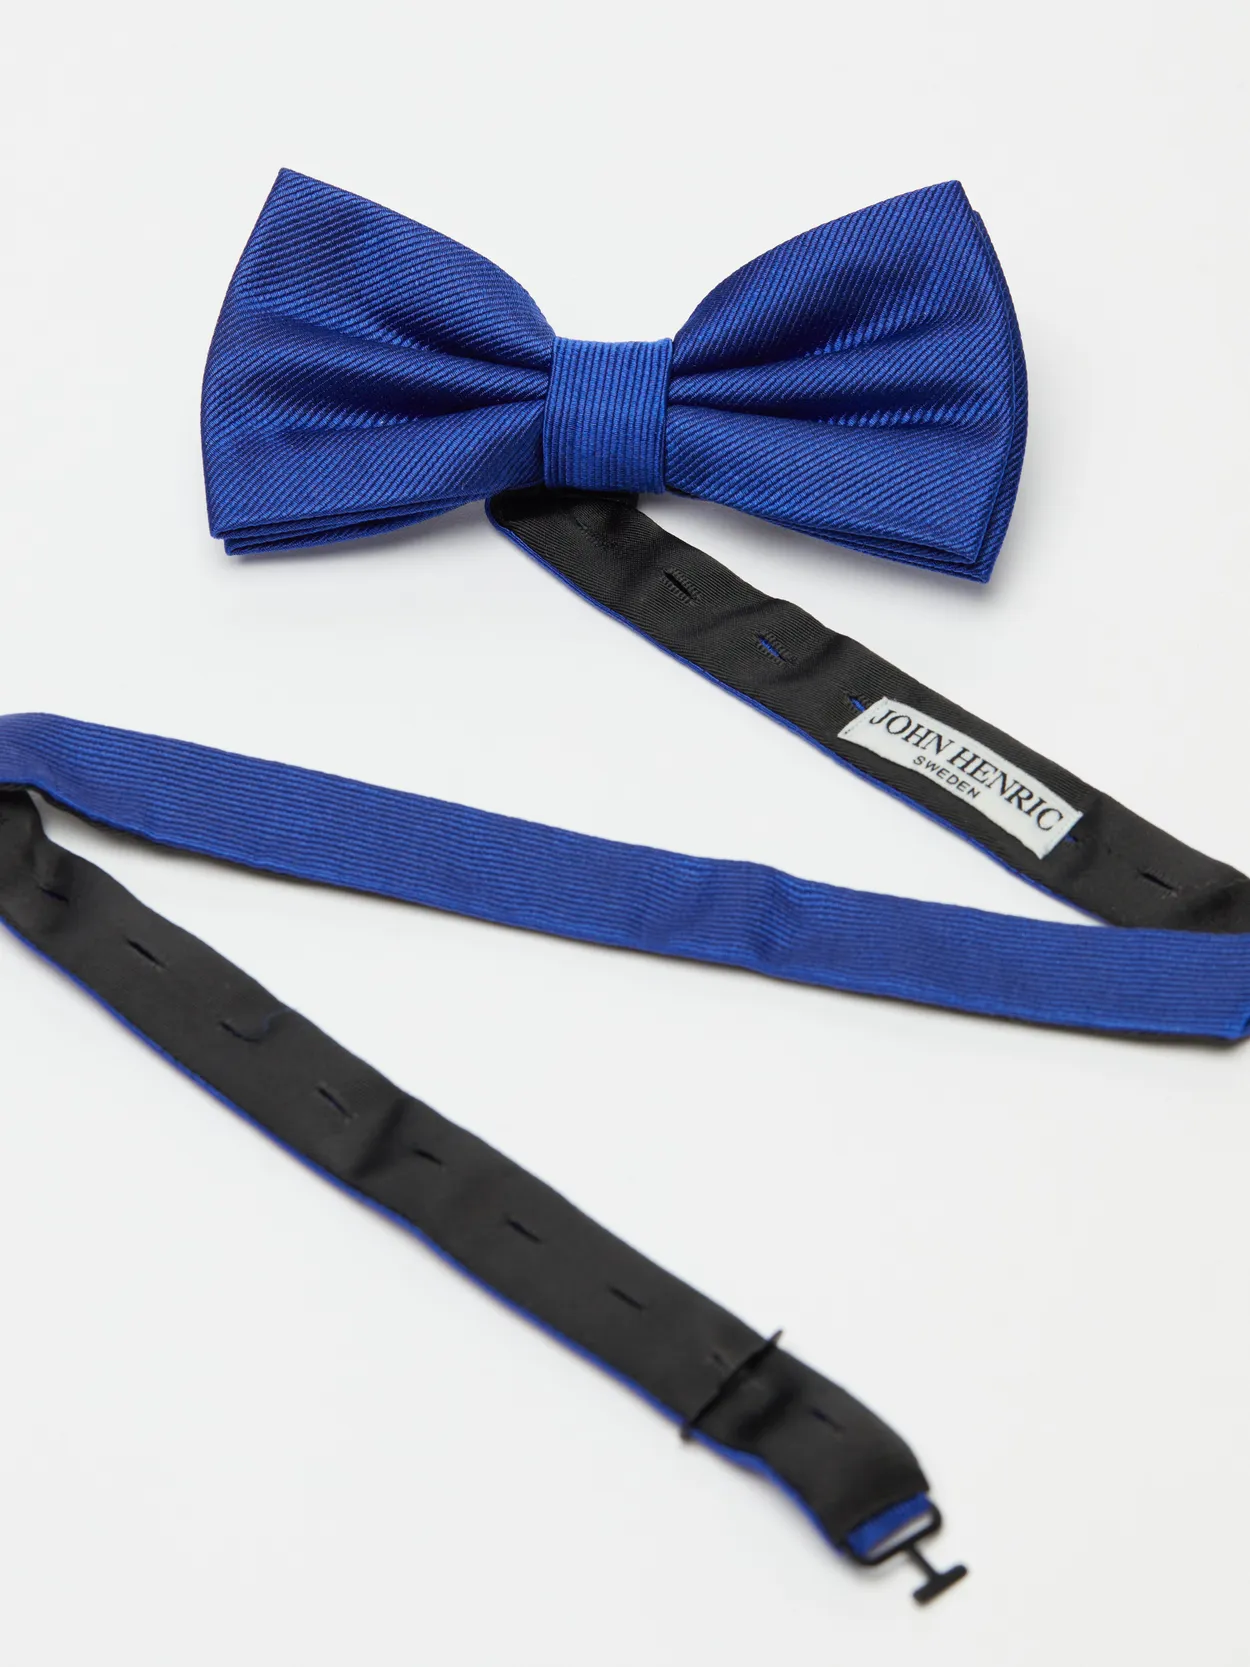 Cobolt Blue Bow Tie Plain